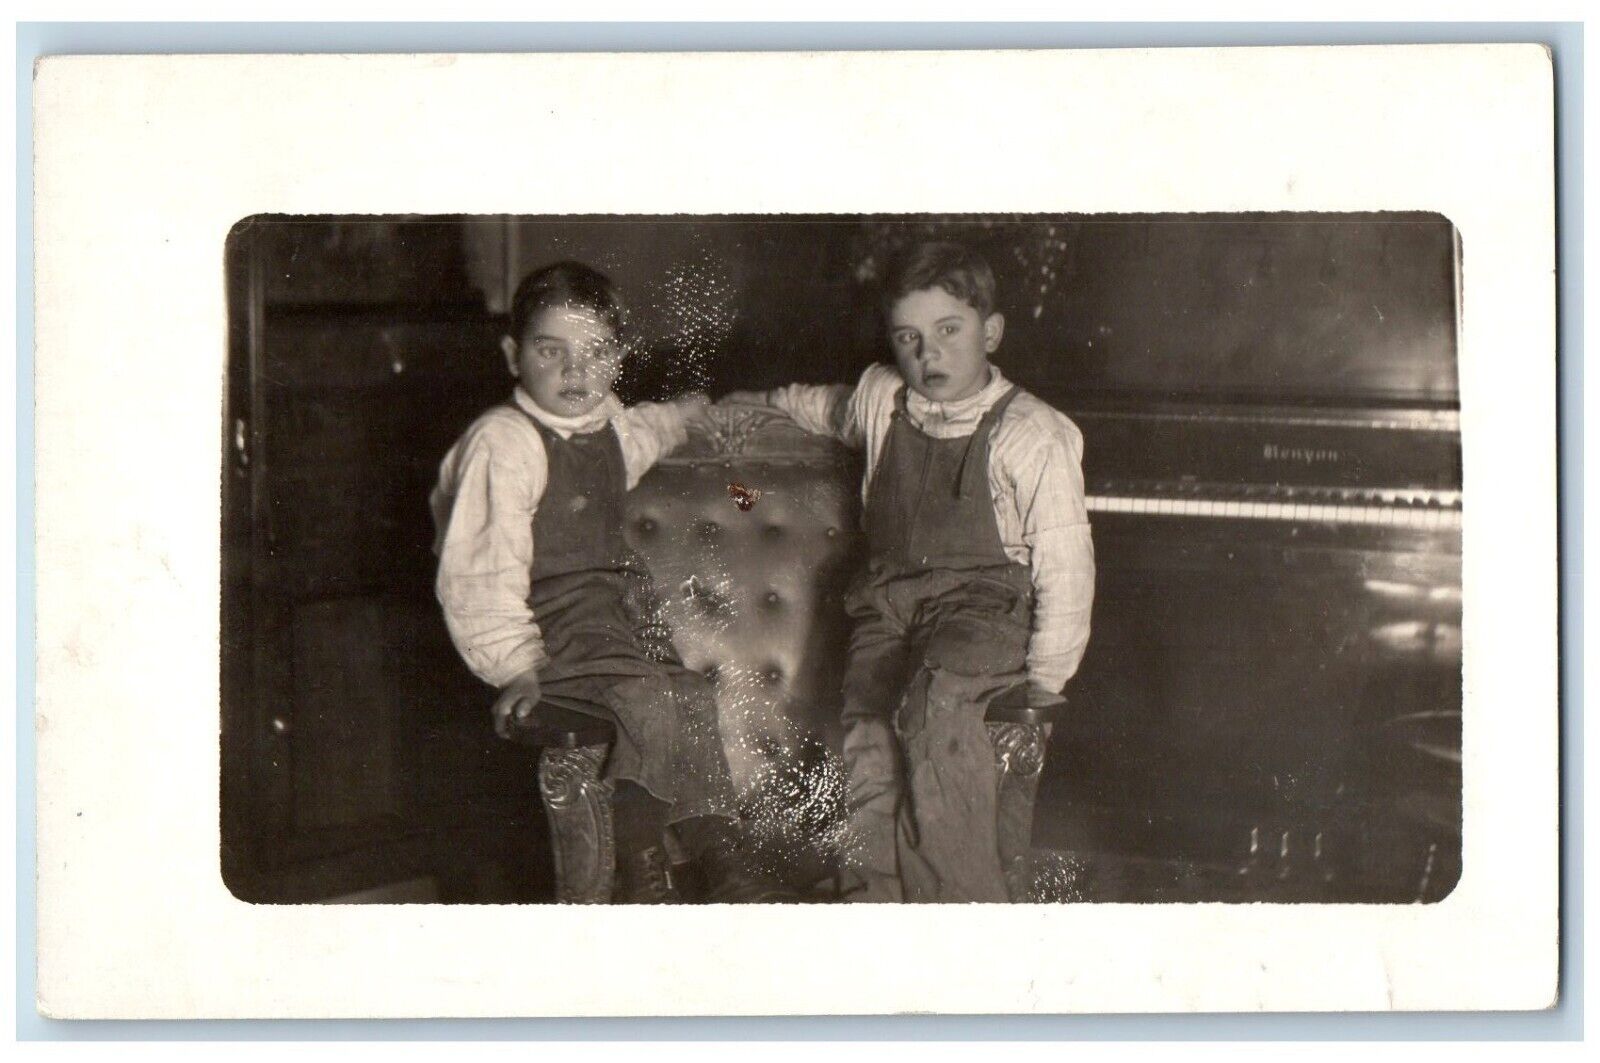 Cute Little Boy Overalls Postcard RPPC Photo Piano Scene c1910s Unposted Antique